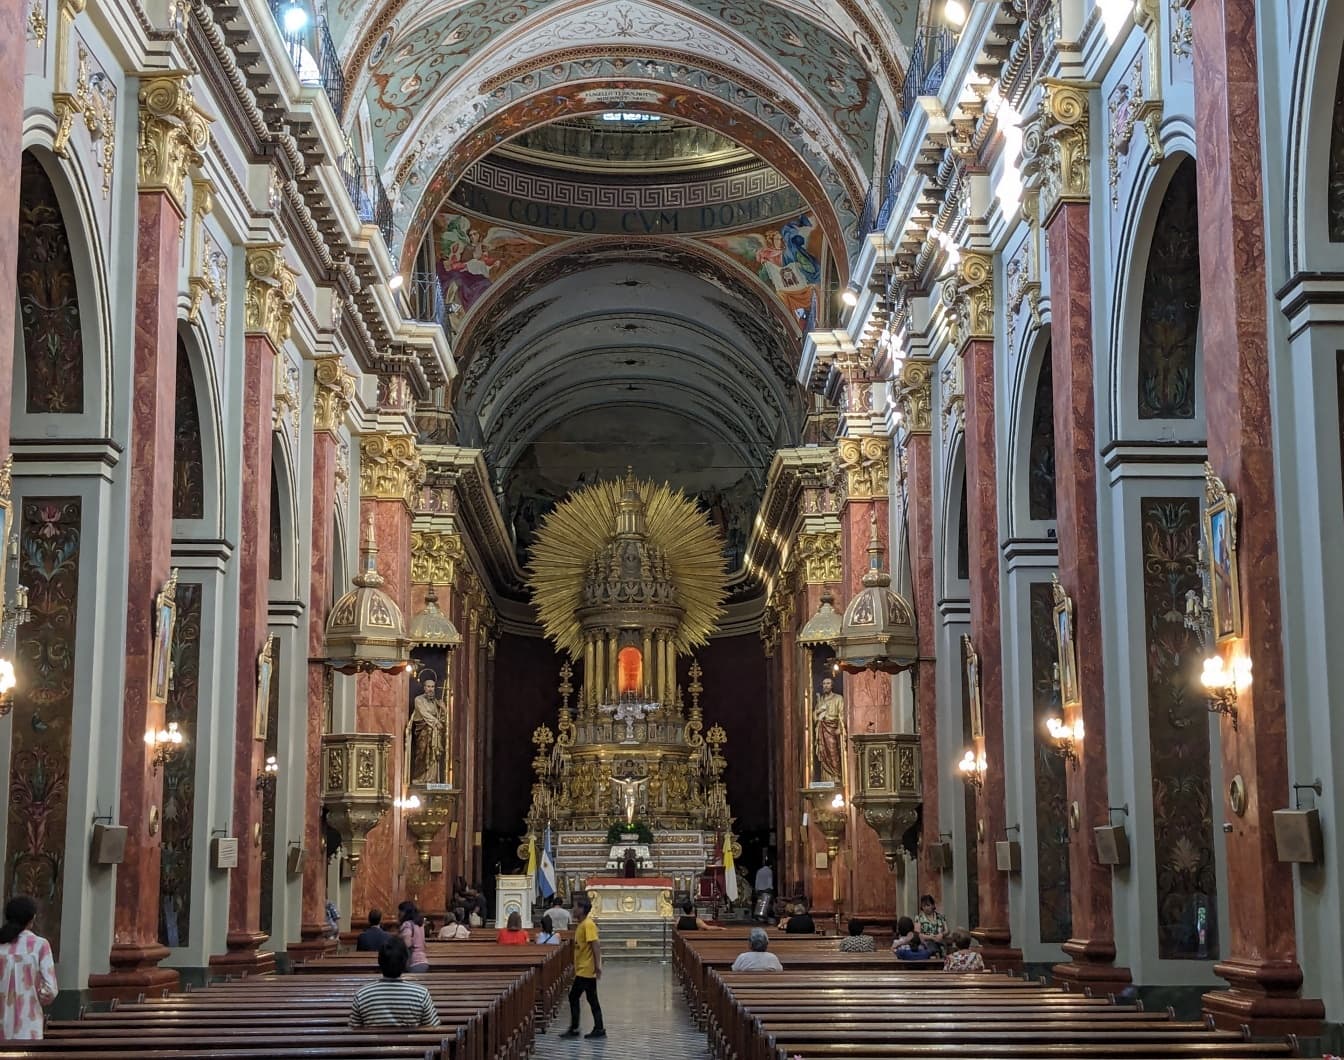 Απίστευτο εσωτερικό του καθεδρικού ναού Salta στη βορειοδυτική Αργεντινή στη νότια Αμερική